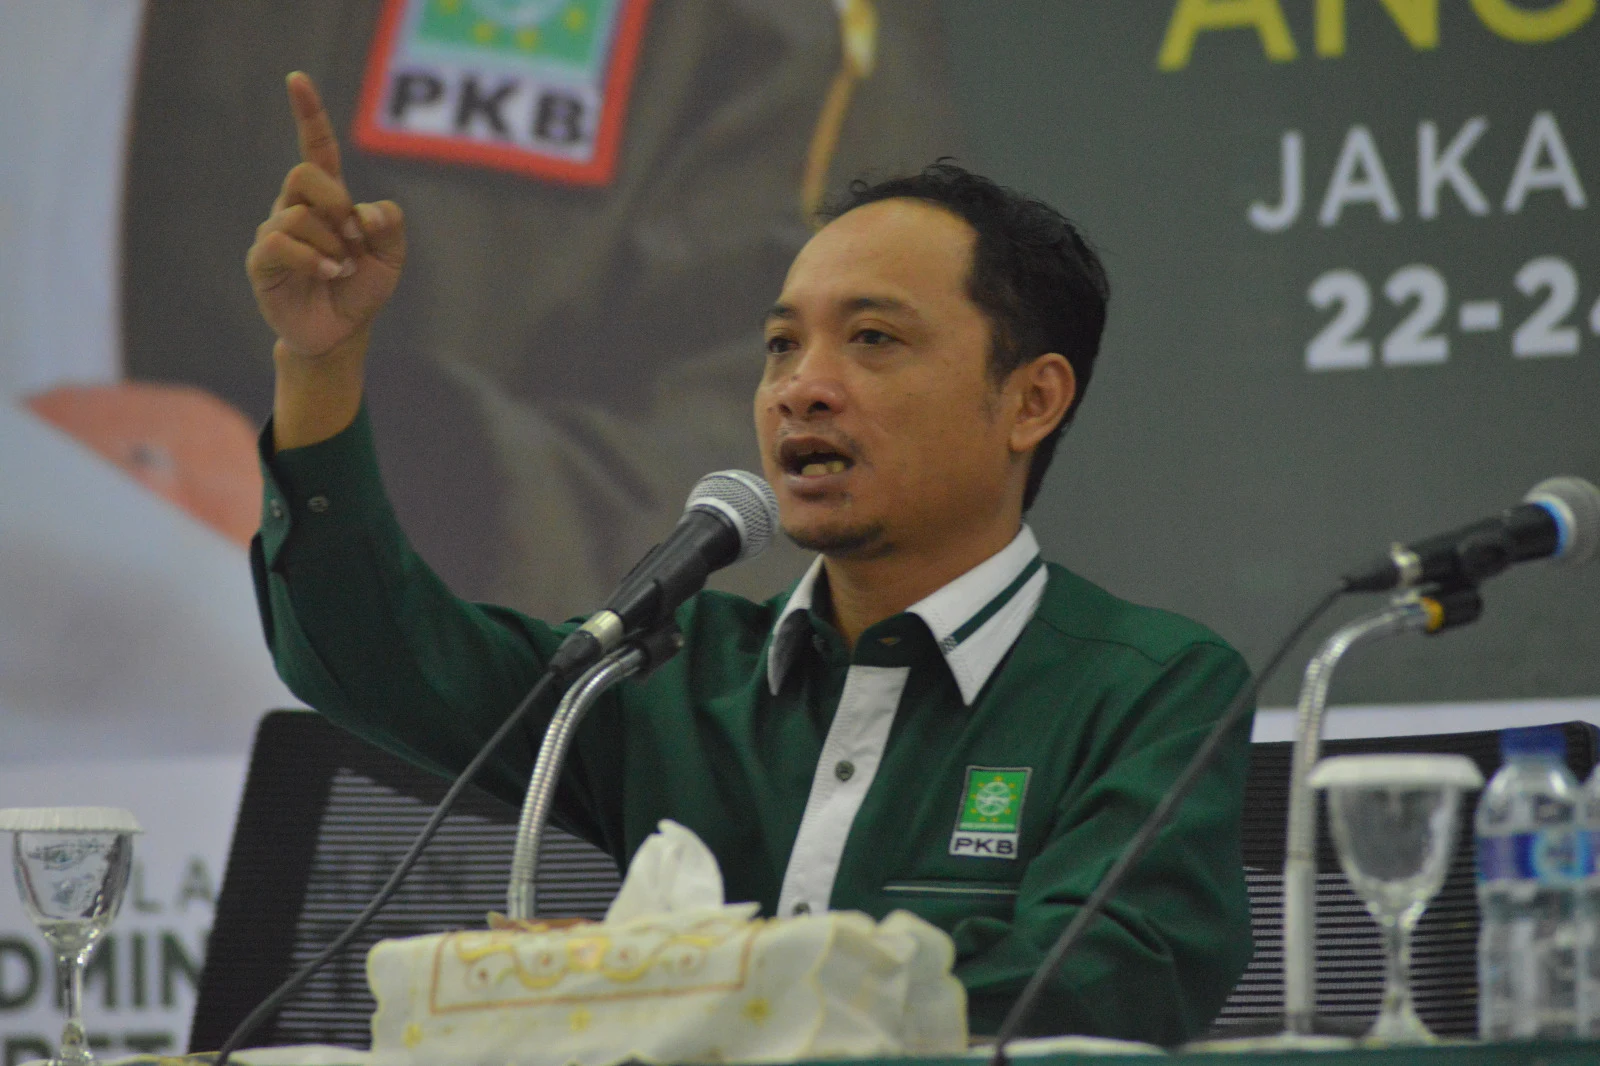 Demokrat Minta Partai Pro-Jokowi Jangan ABS, PKB: Kita Kan Memang ABS, Semua Kebijakan Pemerintah Kami Dukung